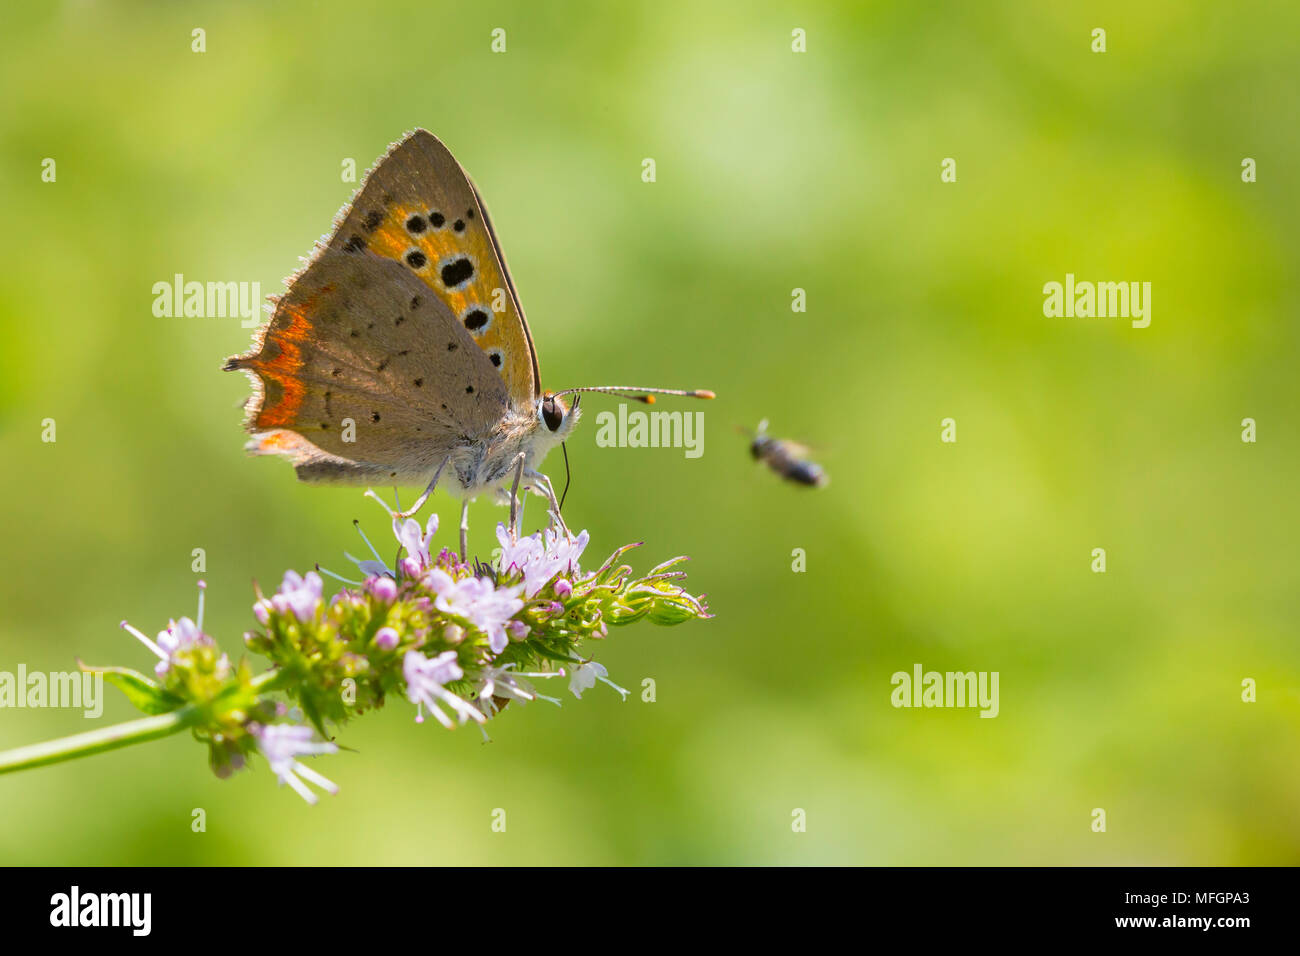 Primer plano de un pequeño o de cobre común mariposa, Lycaena phlaeas, alimentando el néctar de flores blancas en un vibrante y floral prado con luz solar brillante. Foto de stock